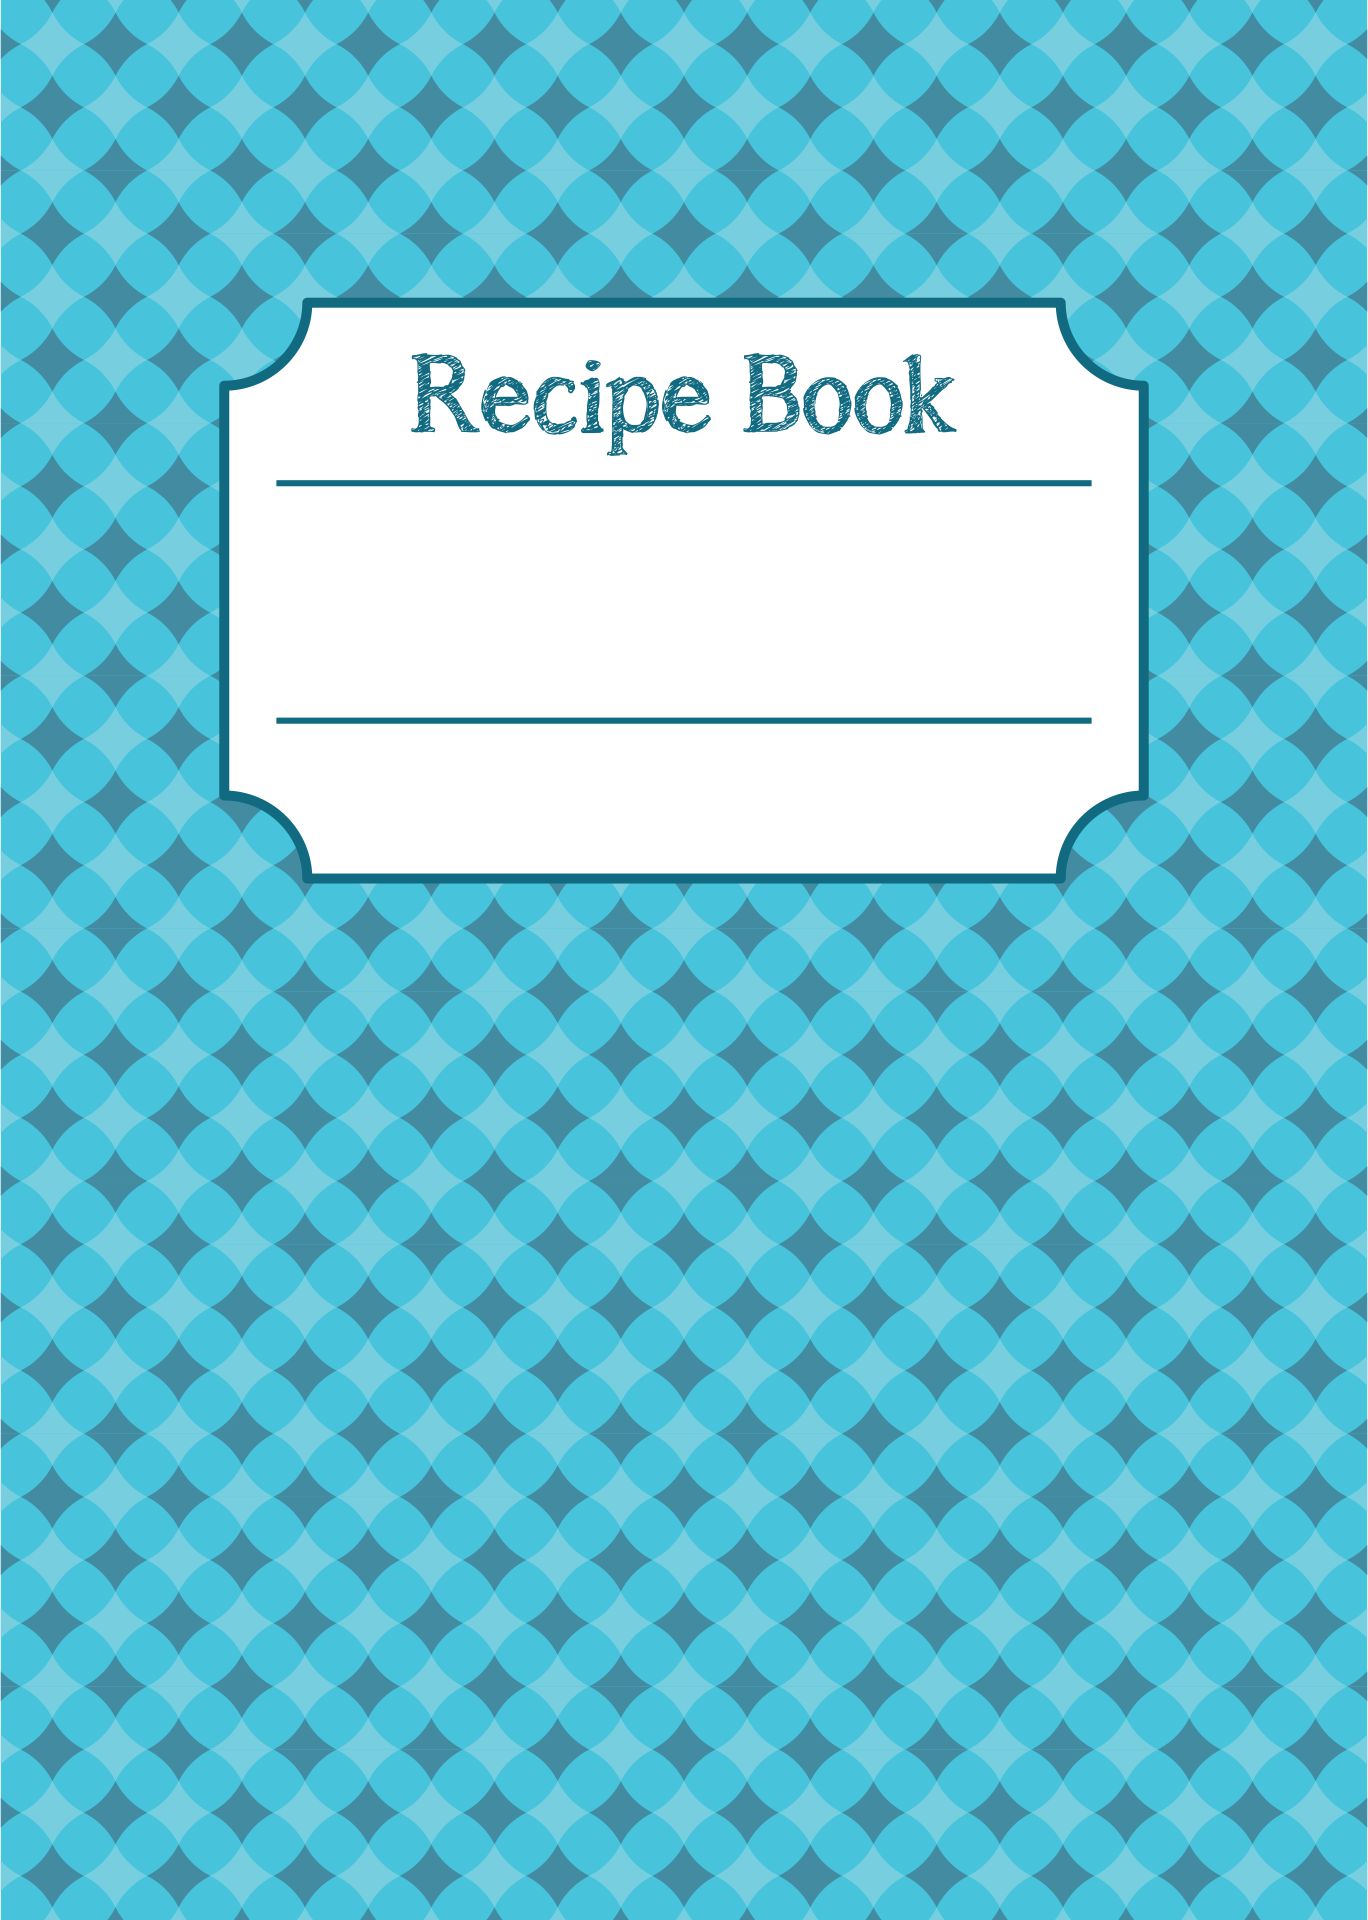 10 Best Printable Cookbook Covers To Print - printablee.com